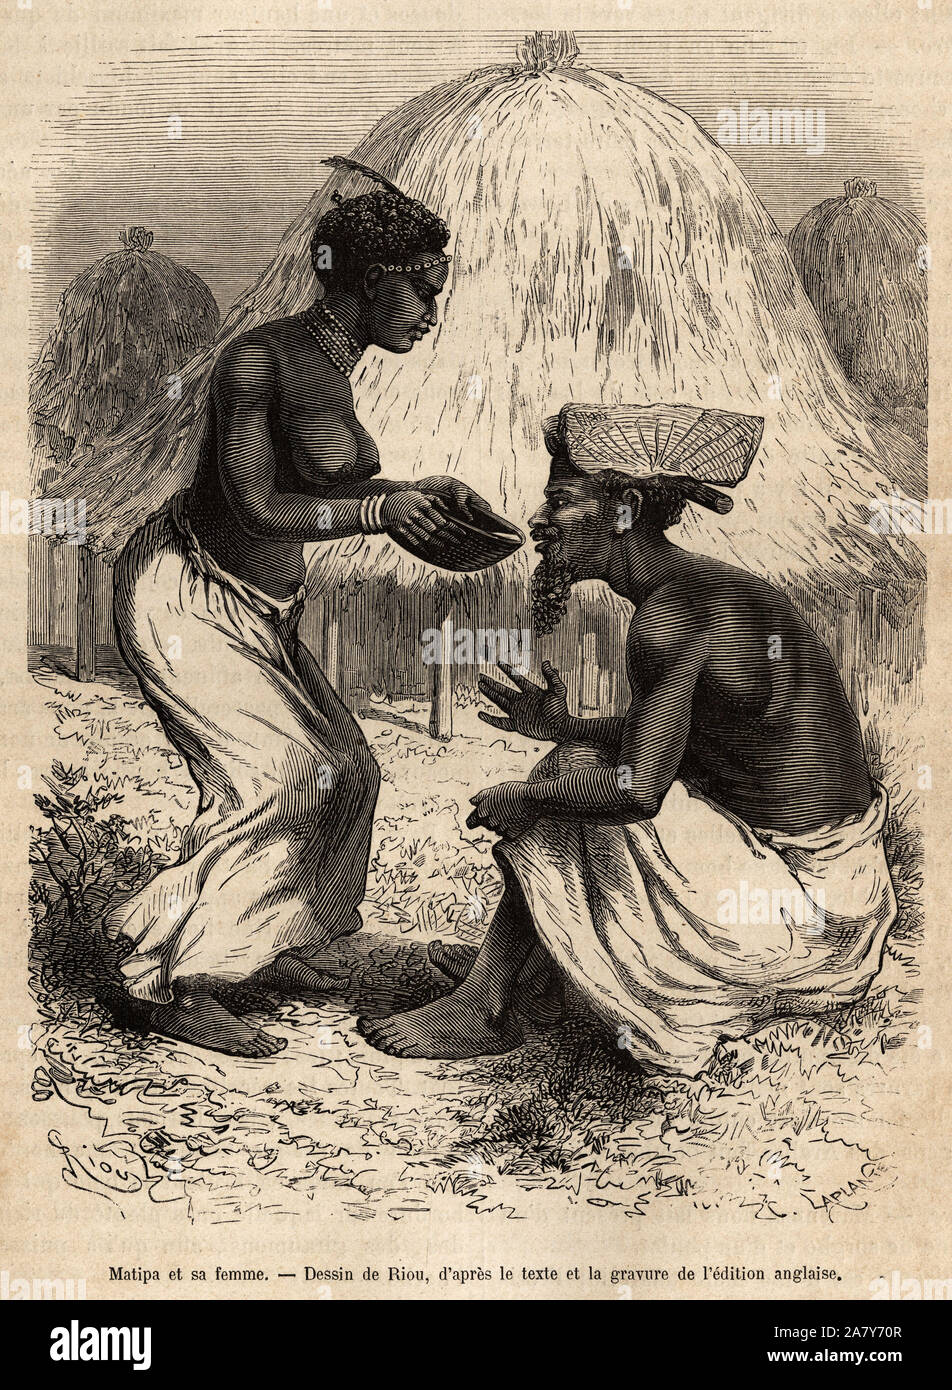 Matipa, un indigene qui fournit des pirogues a l'equipe de Livingstone, se fait servir a boire par sa femme, gravure d'apres un dessin de Riou, illust Stock Photo